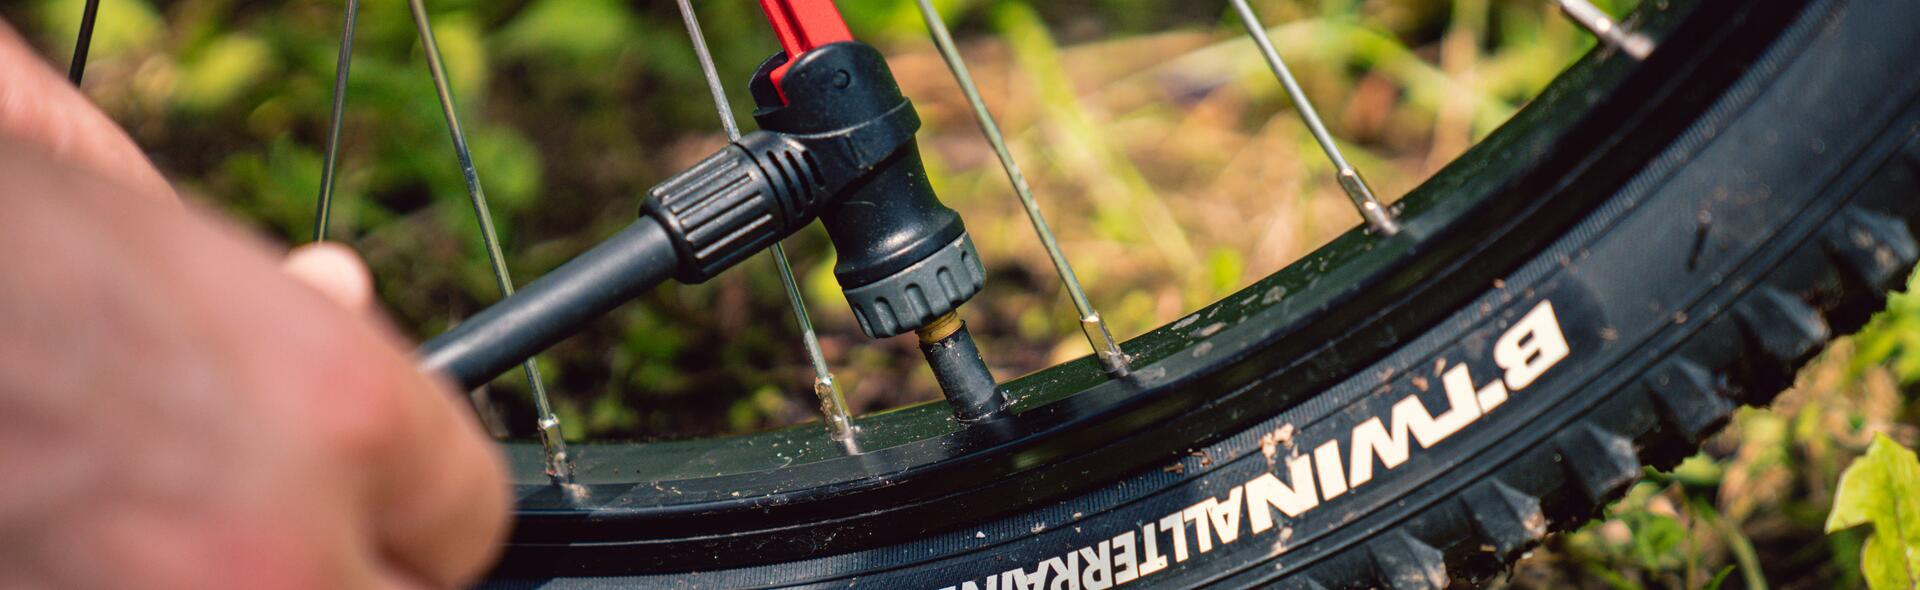 Cuál es la presión correcta de los neumáticos de una bicicleta?